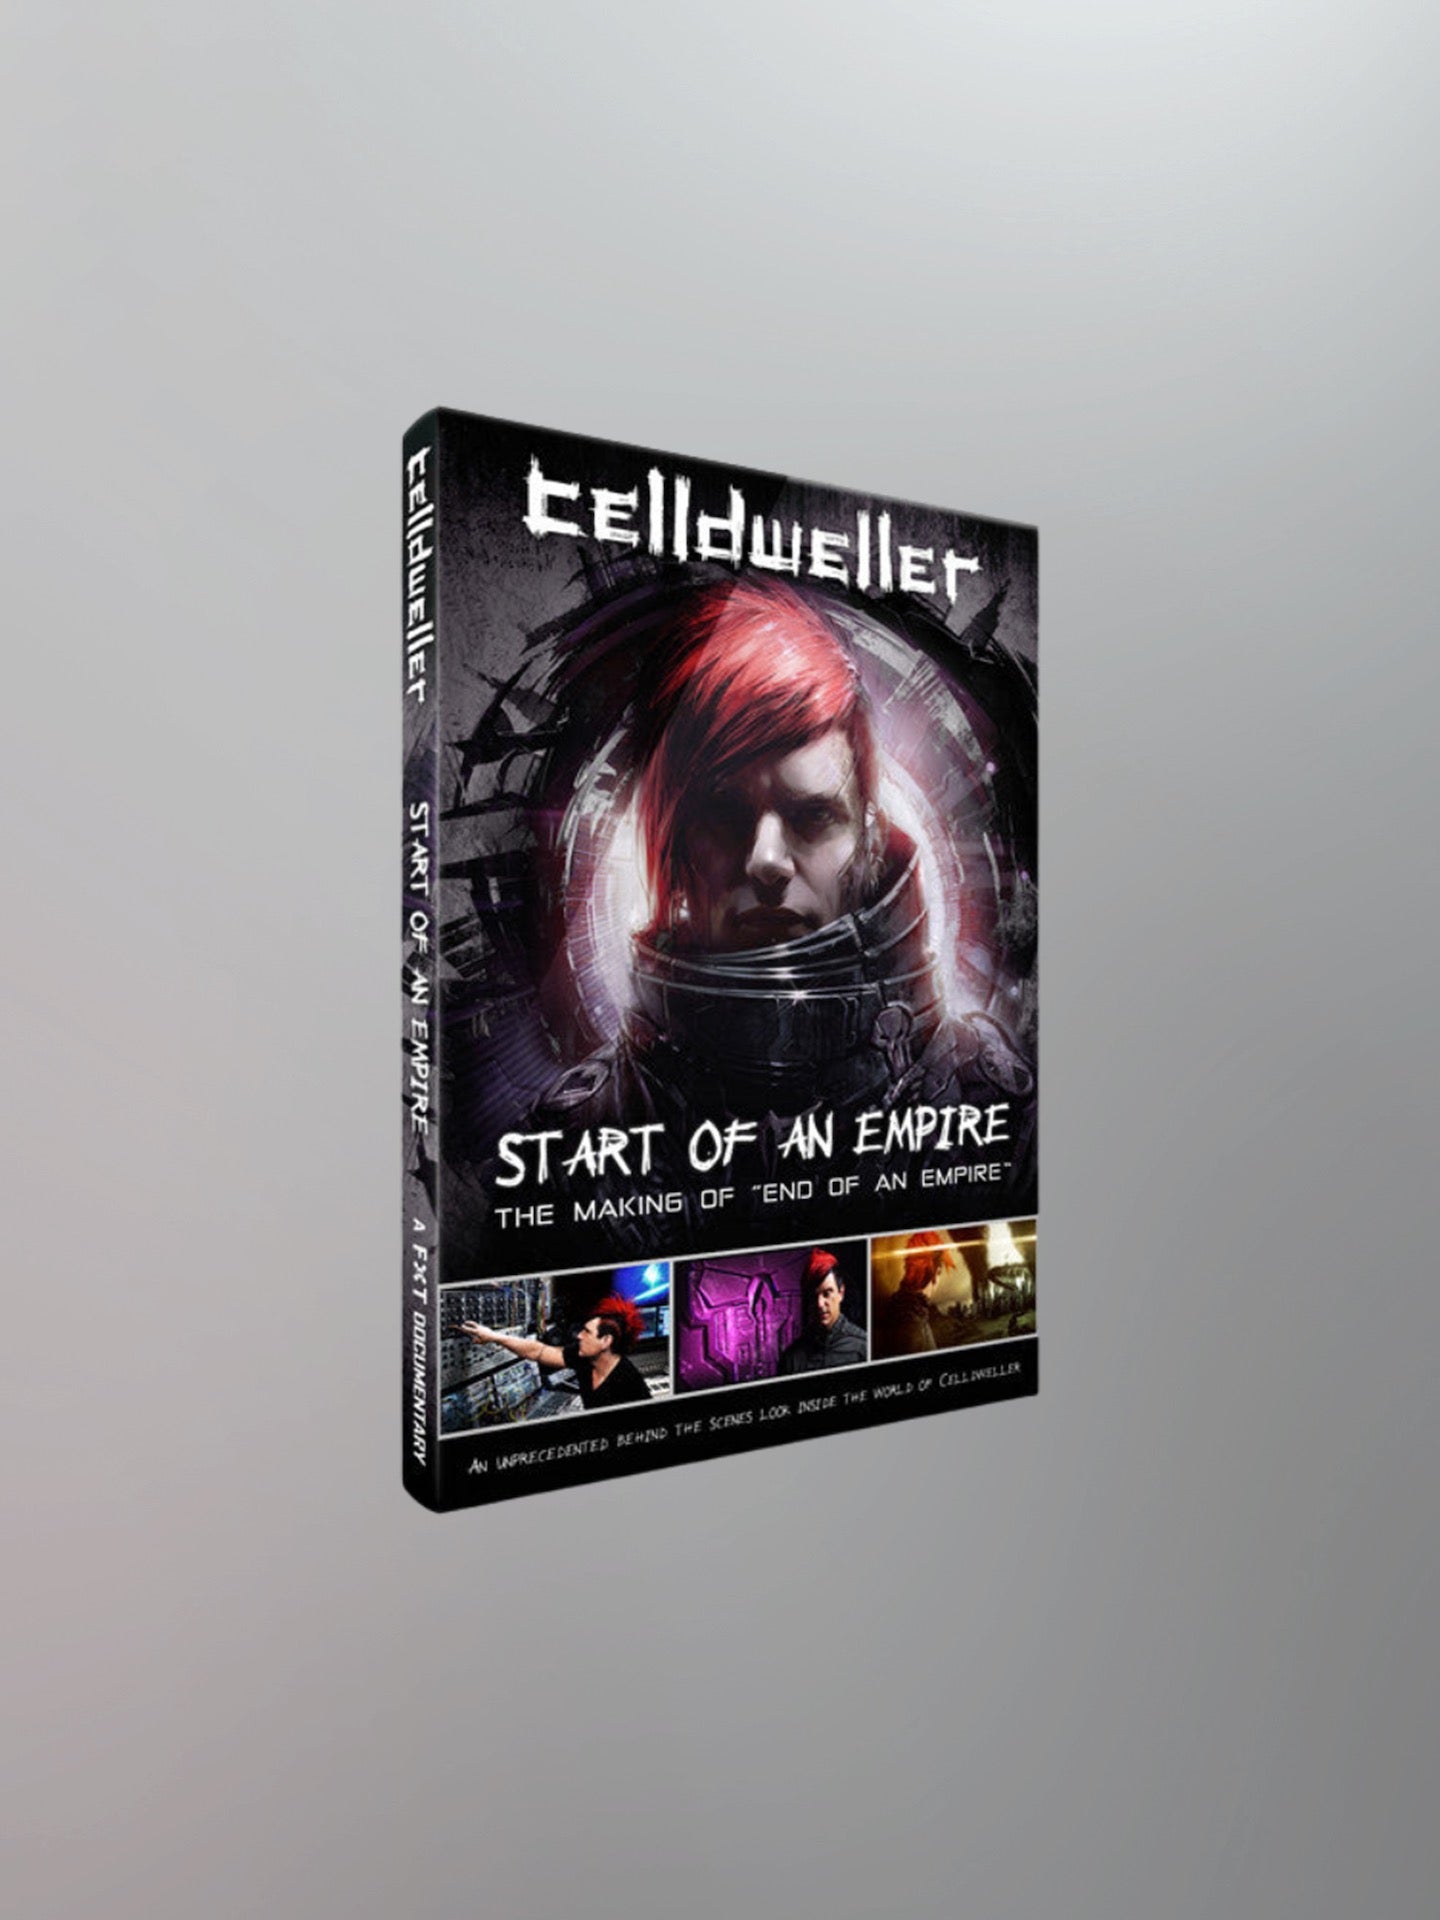 Celldweller - Start of an Empire [Digital Documentary]